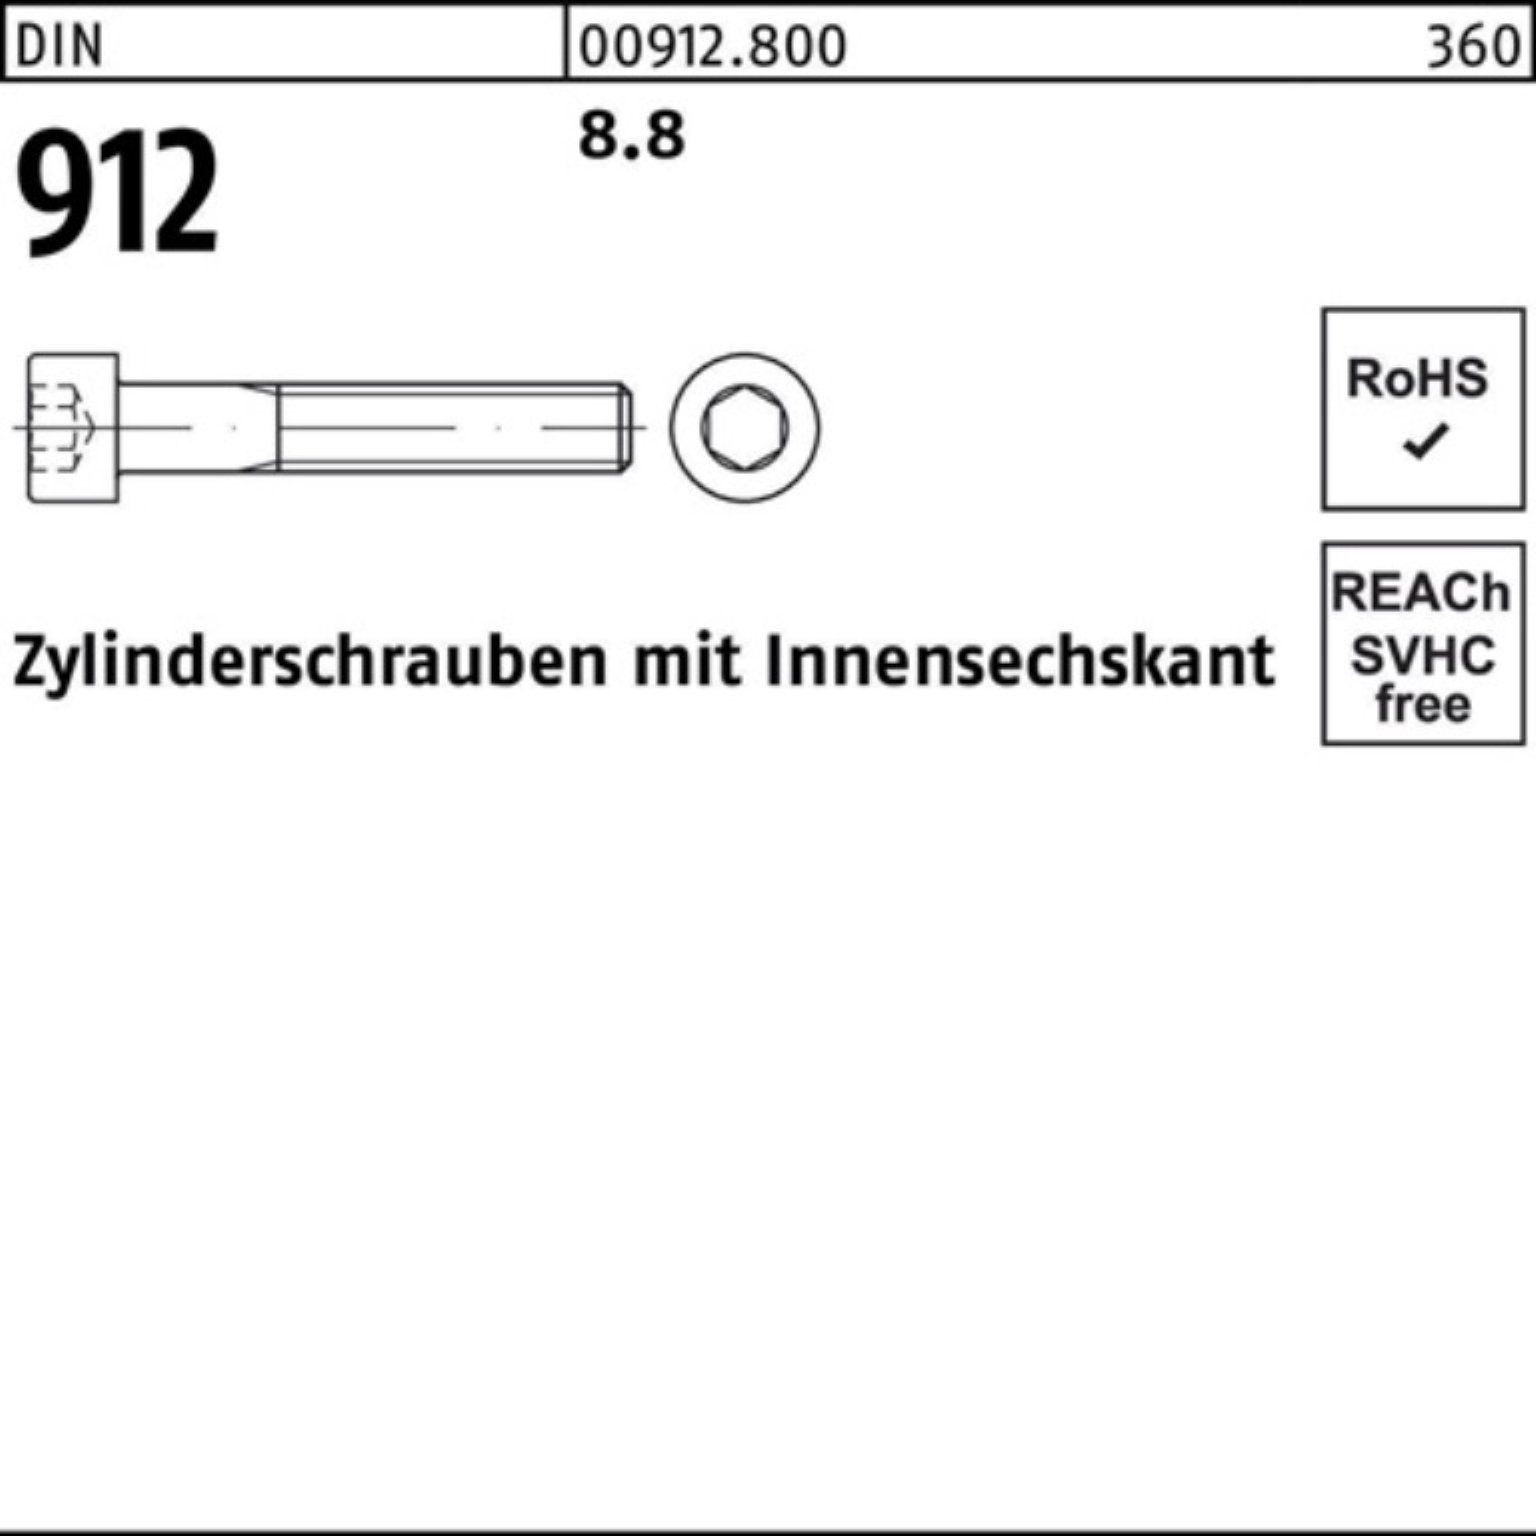 Beliebte Schnäppchen Reyher Zylinderschraube 500er DIN DI Zylinderschraube Innen-6kt Pack M4x 50 8.8 500 Stück 912